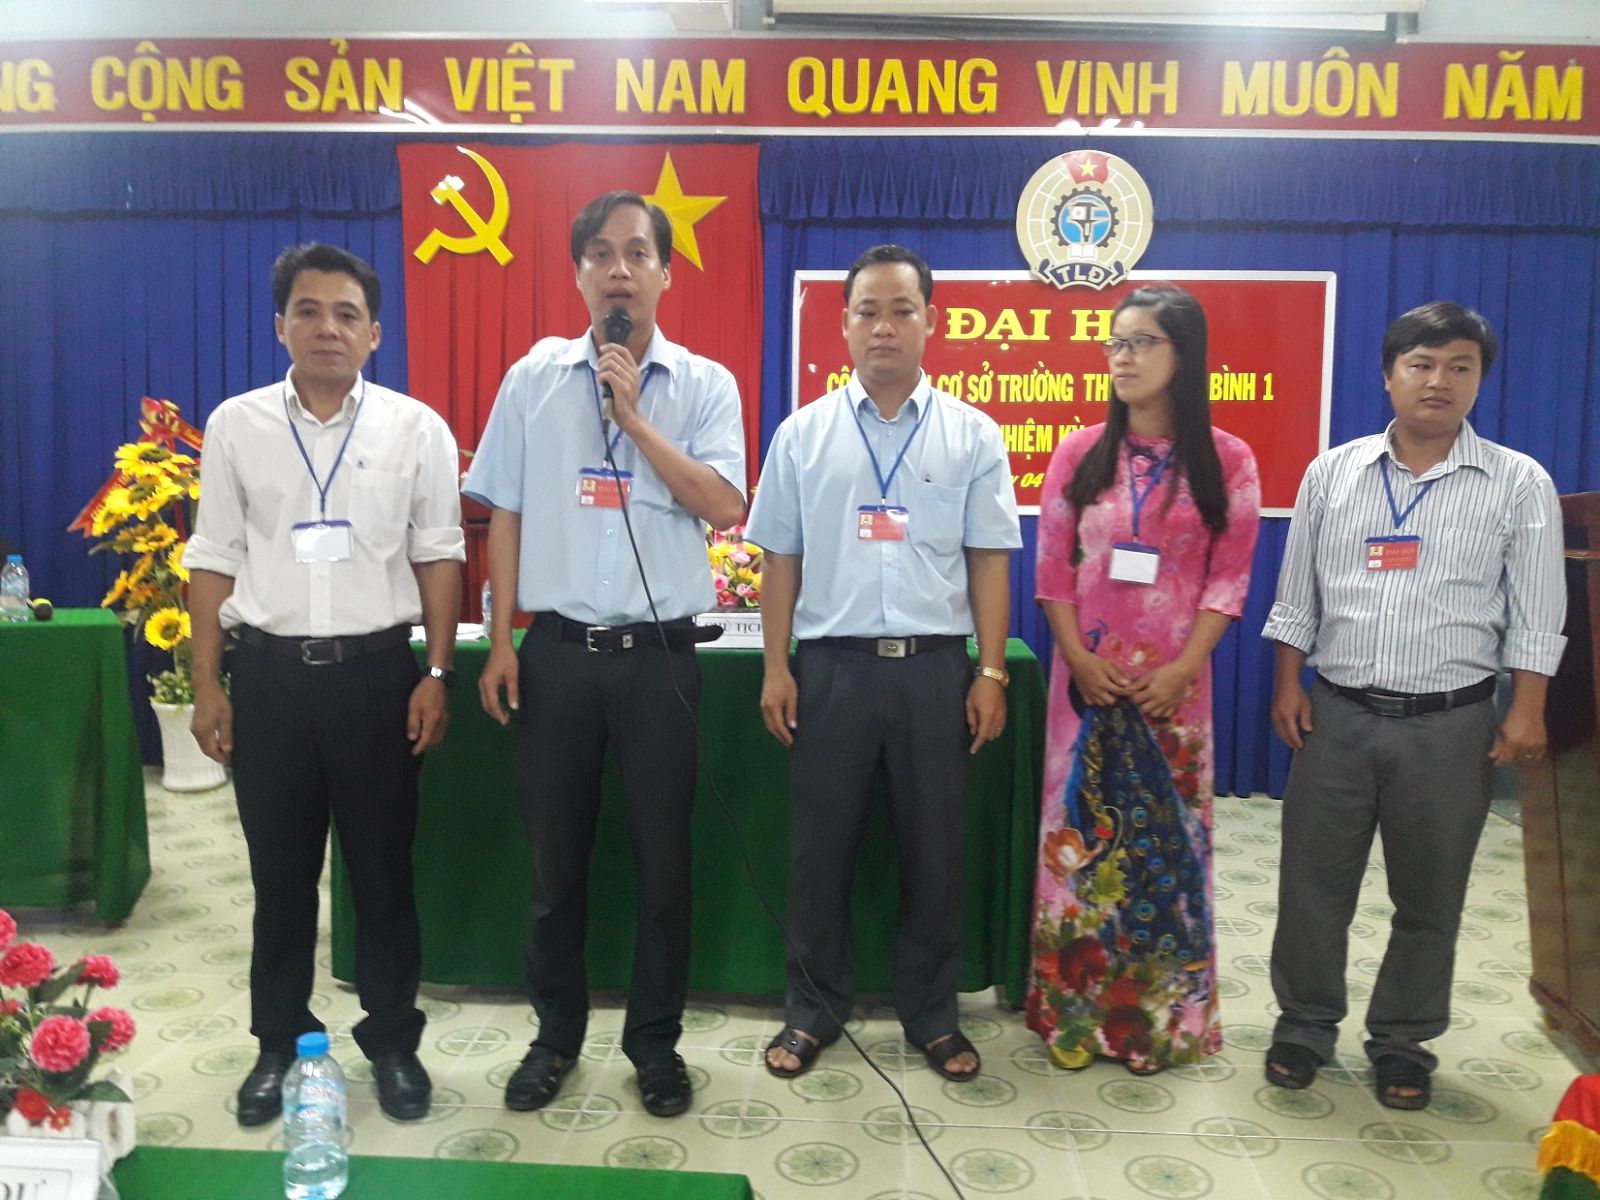 BCH CĐCS trường THPT Thanh Bình 1 nhiệm kỳ 2017-2022